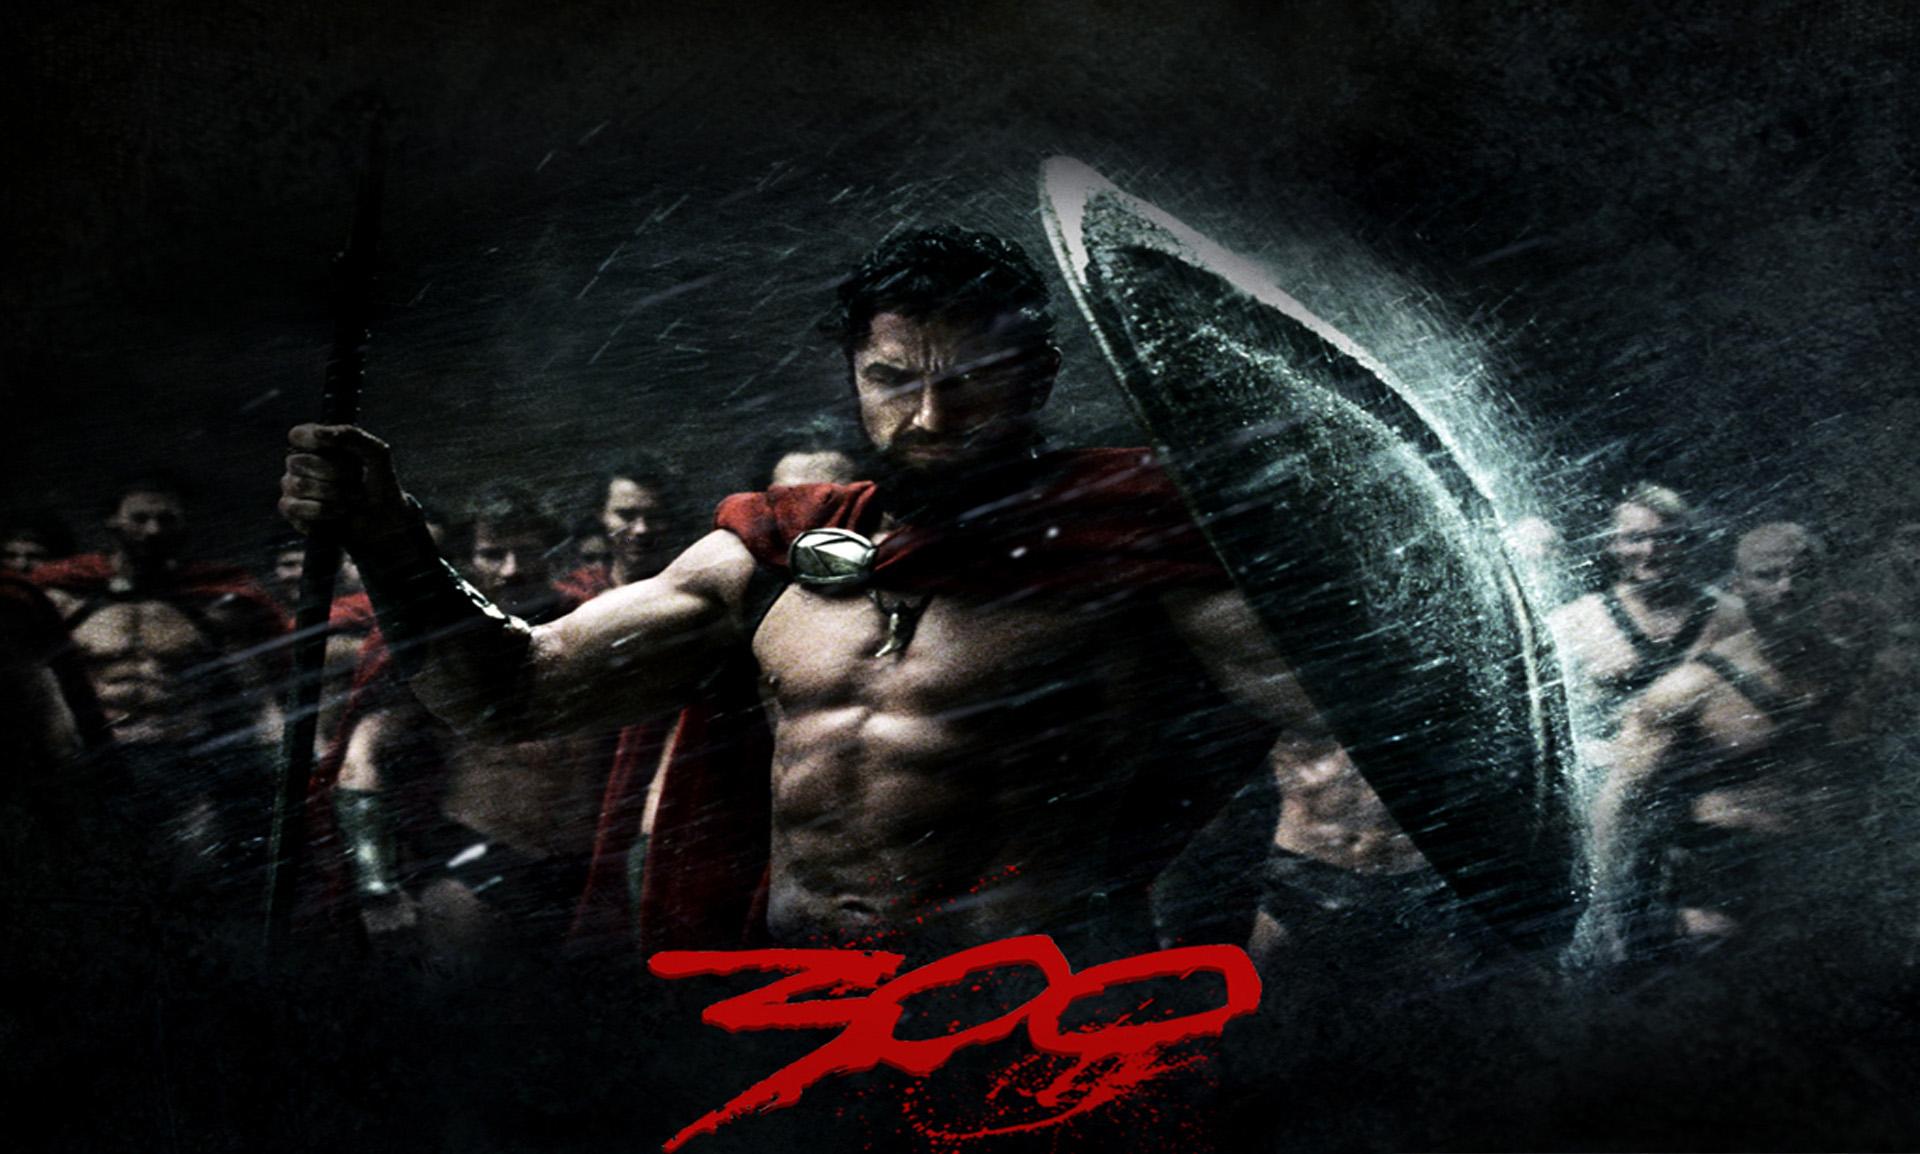 spartacus, spartan, 300 (movie), movie, 300, gerard butler, king leonidas, warrior